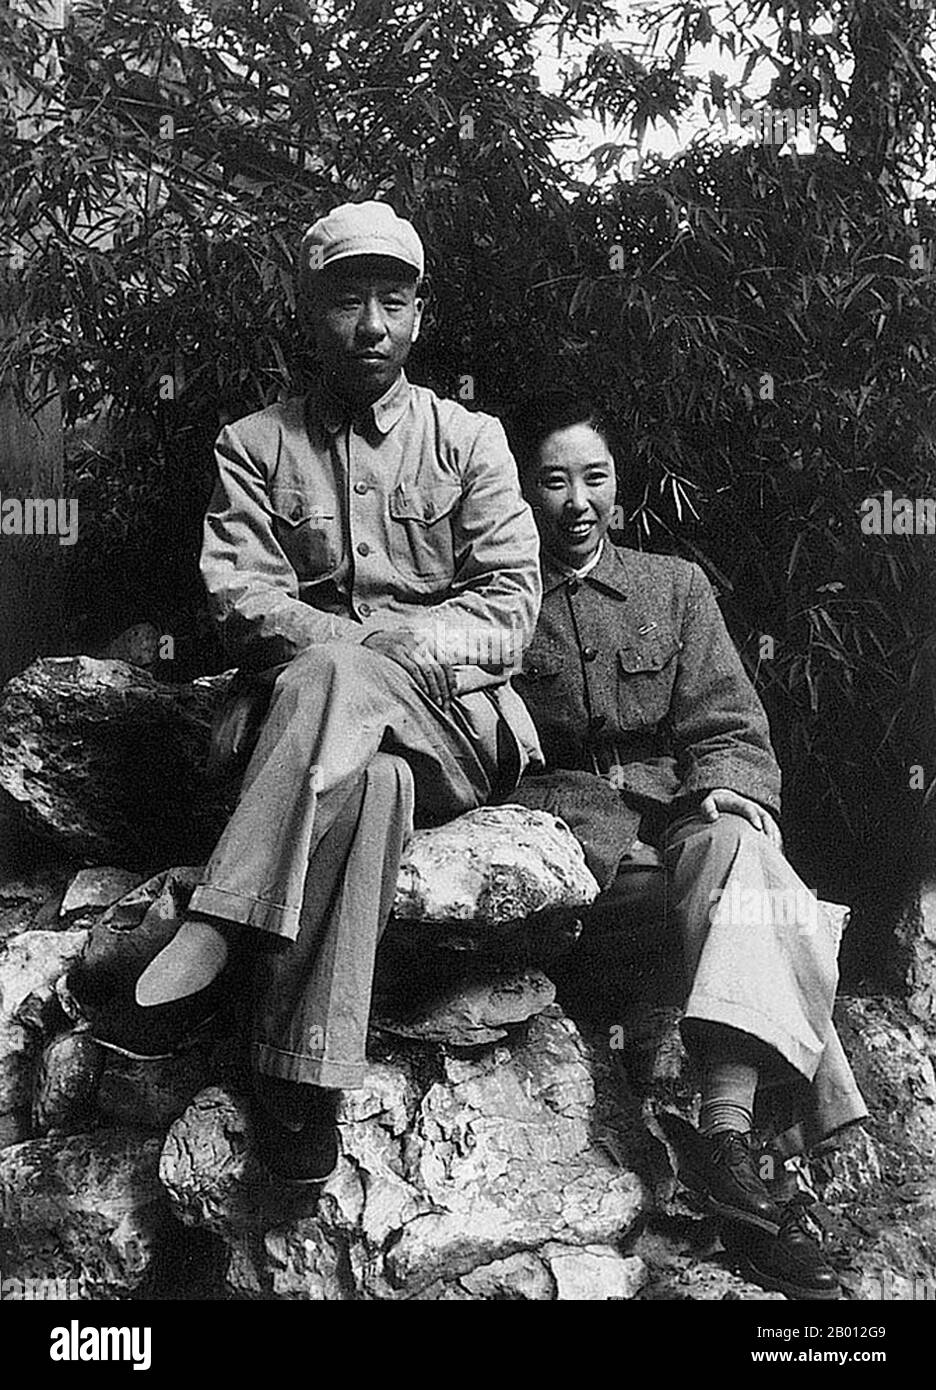 Chine: Liu Shaoqi avec sa femme Wang Guangmei dans les collines parfumées à l'extérieur de Beijing, c. 1949. Liu Shaoqi (Liu Shao-ch'i, 24 novembre 1898 – 12 novembre 1969) était un révolutionnaire, un homme d'État et un théoricien chinois. Il a été Président de la République populaire de Chine, chef d'État chinois, du 27 avril 1959 au 31 octobre 1968, au cours de laquelle il a mis en œuvre des politiques de reconstruction économique en Chine. Il est tombé en déroute vers la fin des années 1960 pendant la Révolution culturelle à cause de ses points de vue « de droite » et, on le théorise, parce que Mao considérait Liu comme une menace pour son pouvoir. Banque D'Images